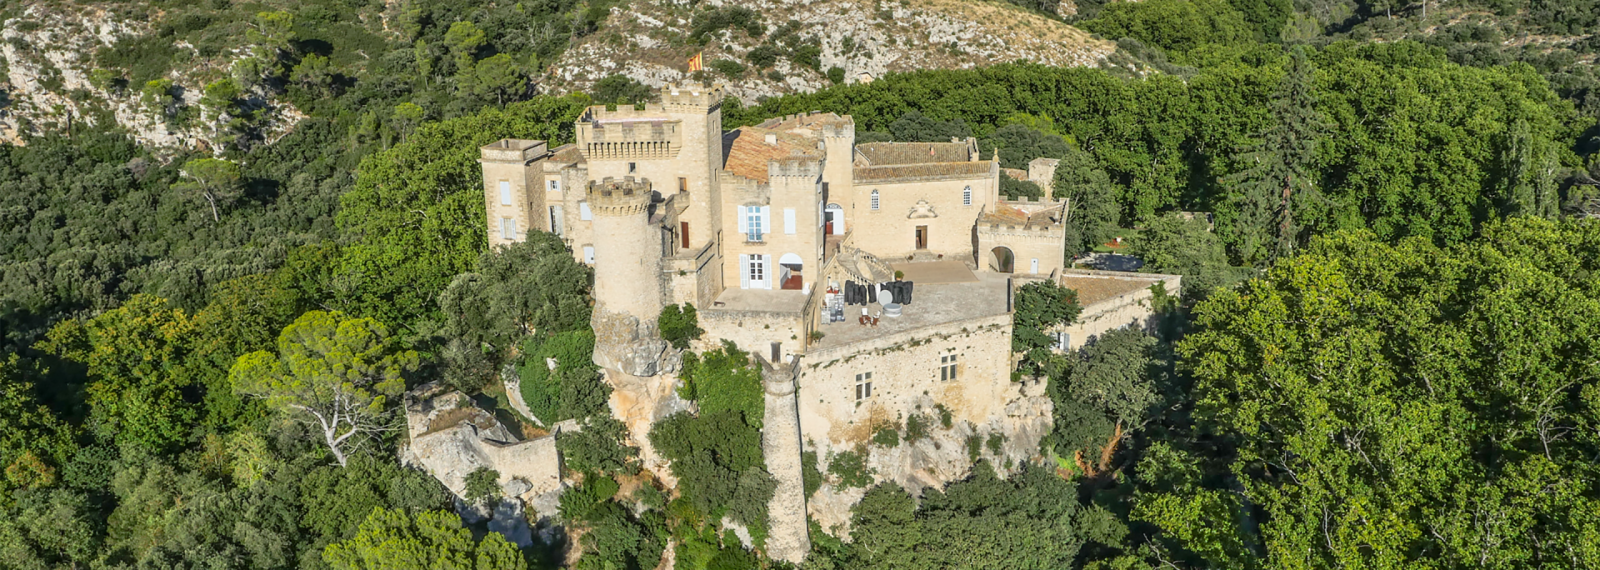 Vue aérienne du château de la Barben